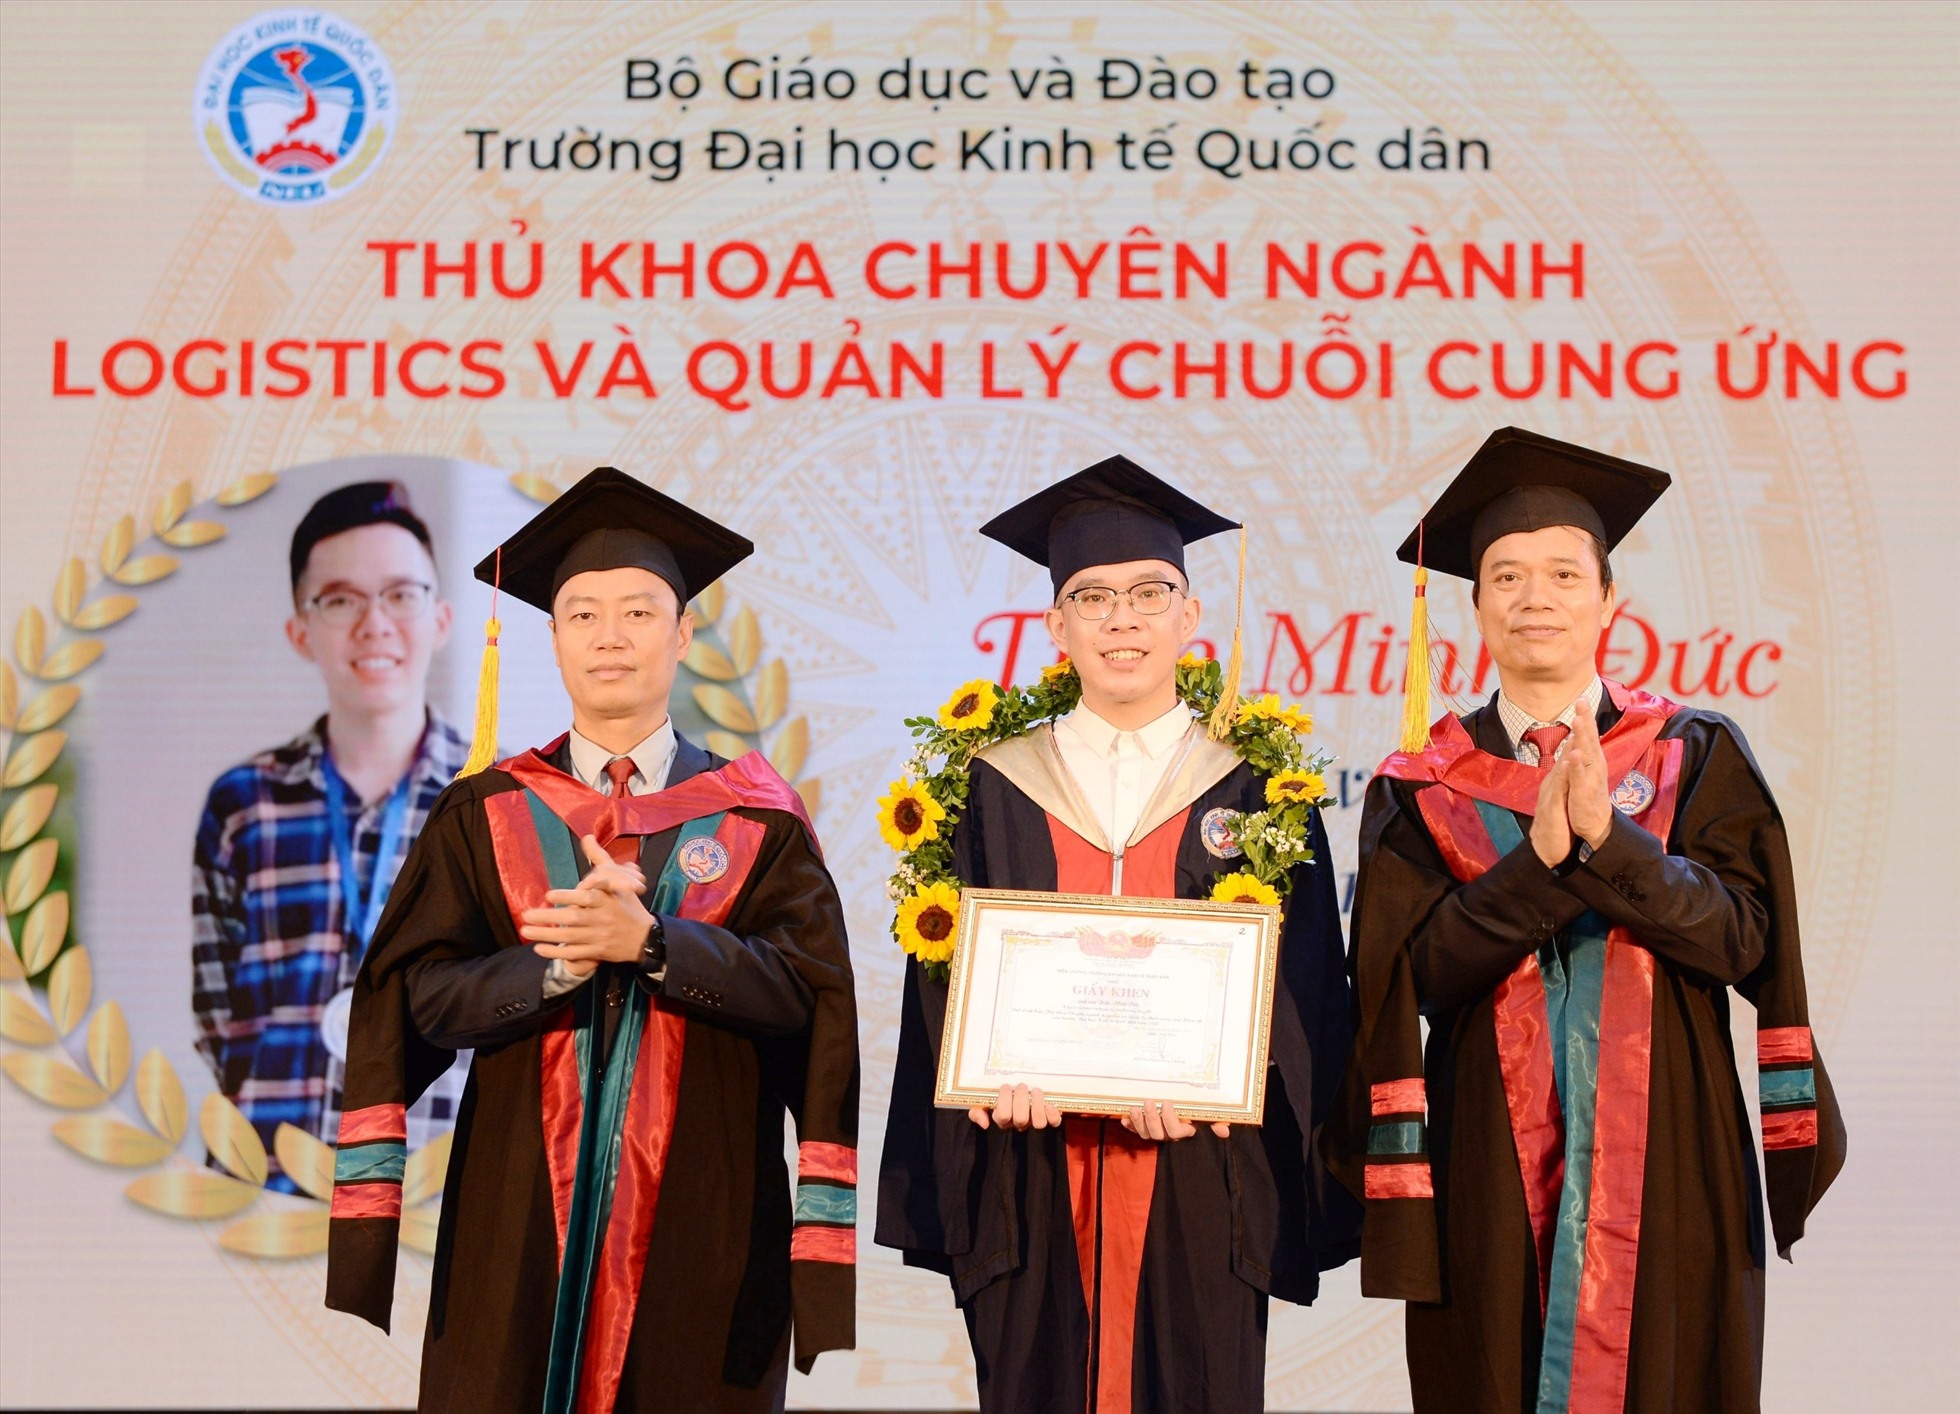 Trần Minh Đức - thủ khoa đầu ra Trường Đại học Kinh tế Quốc dân năm 2022. Ảnh: Nhân vật cung cấp